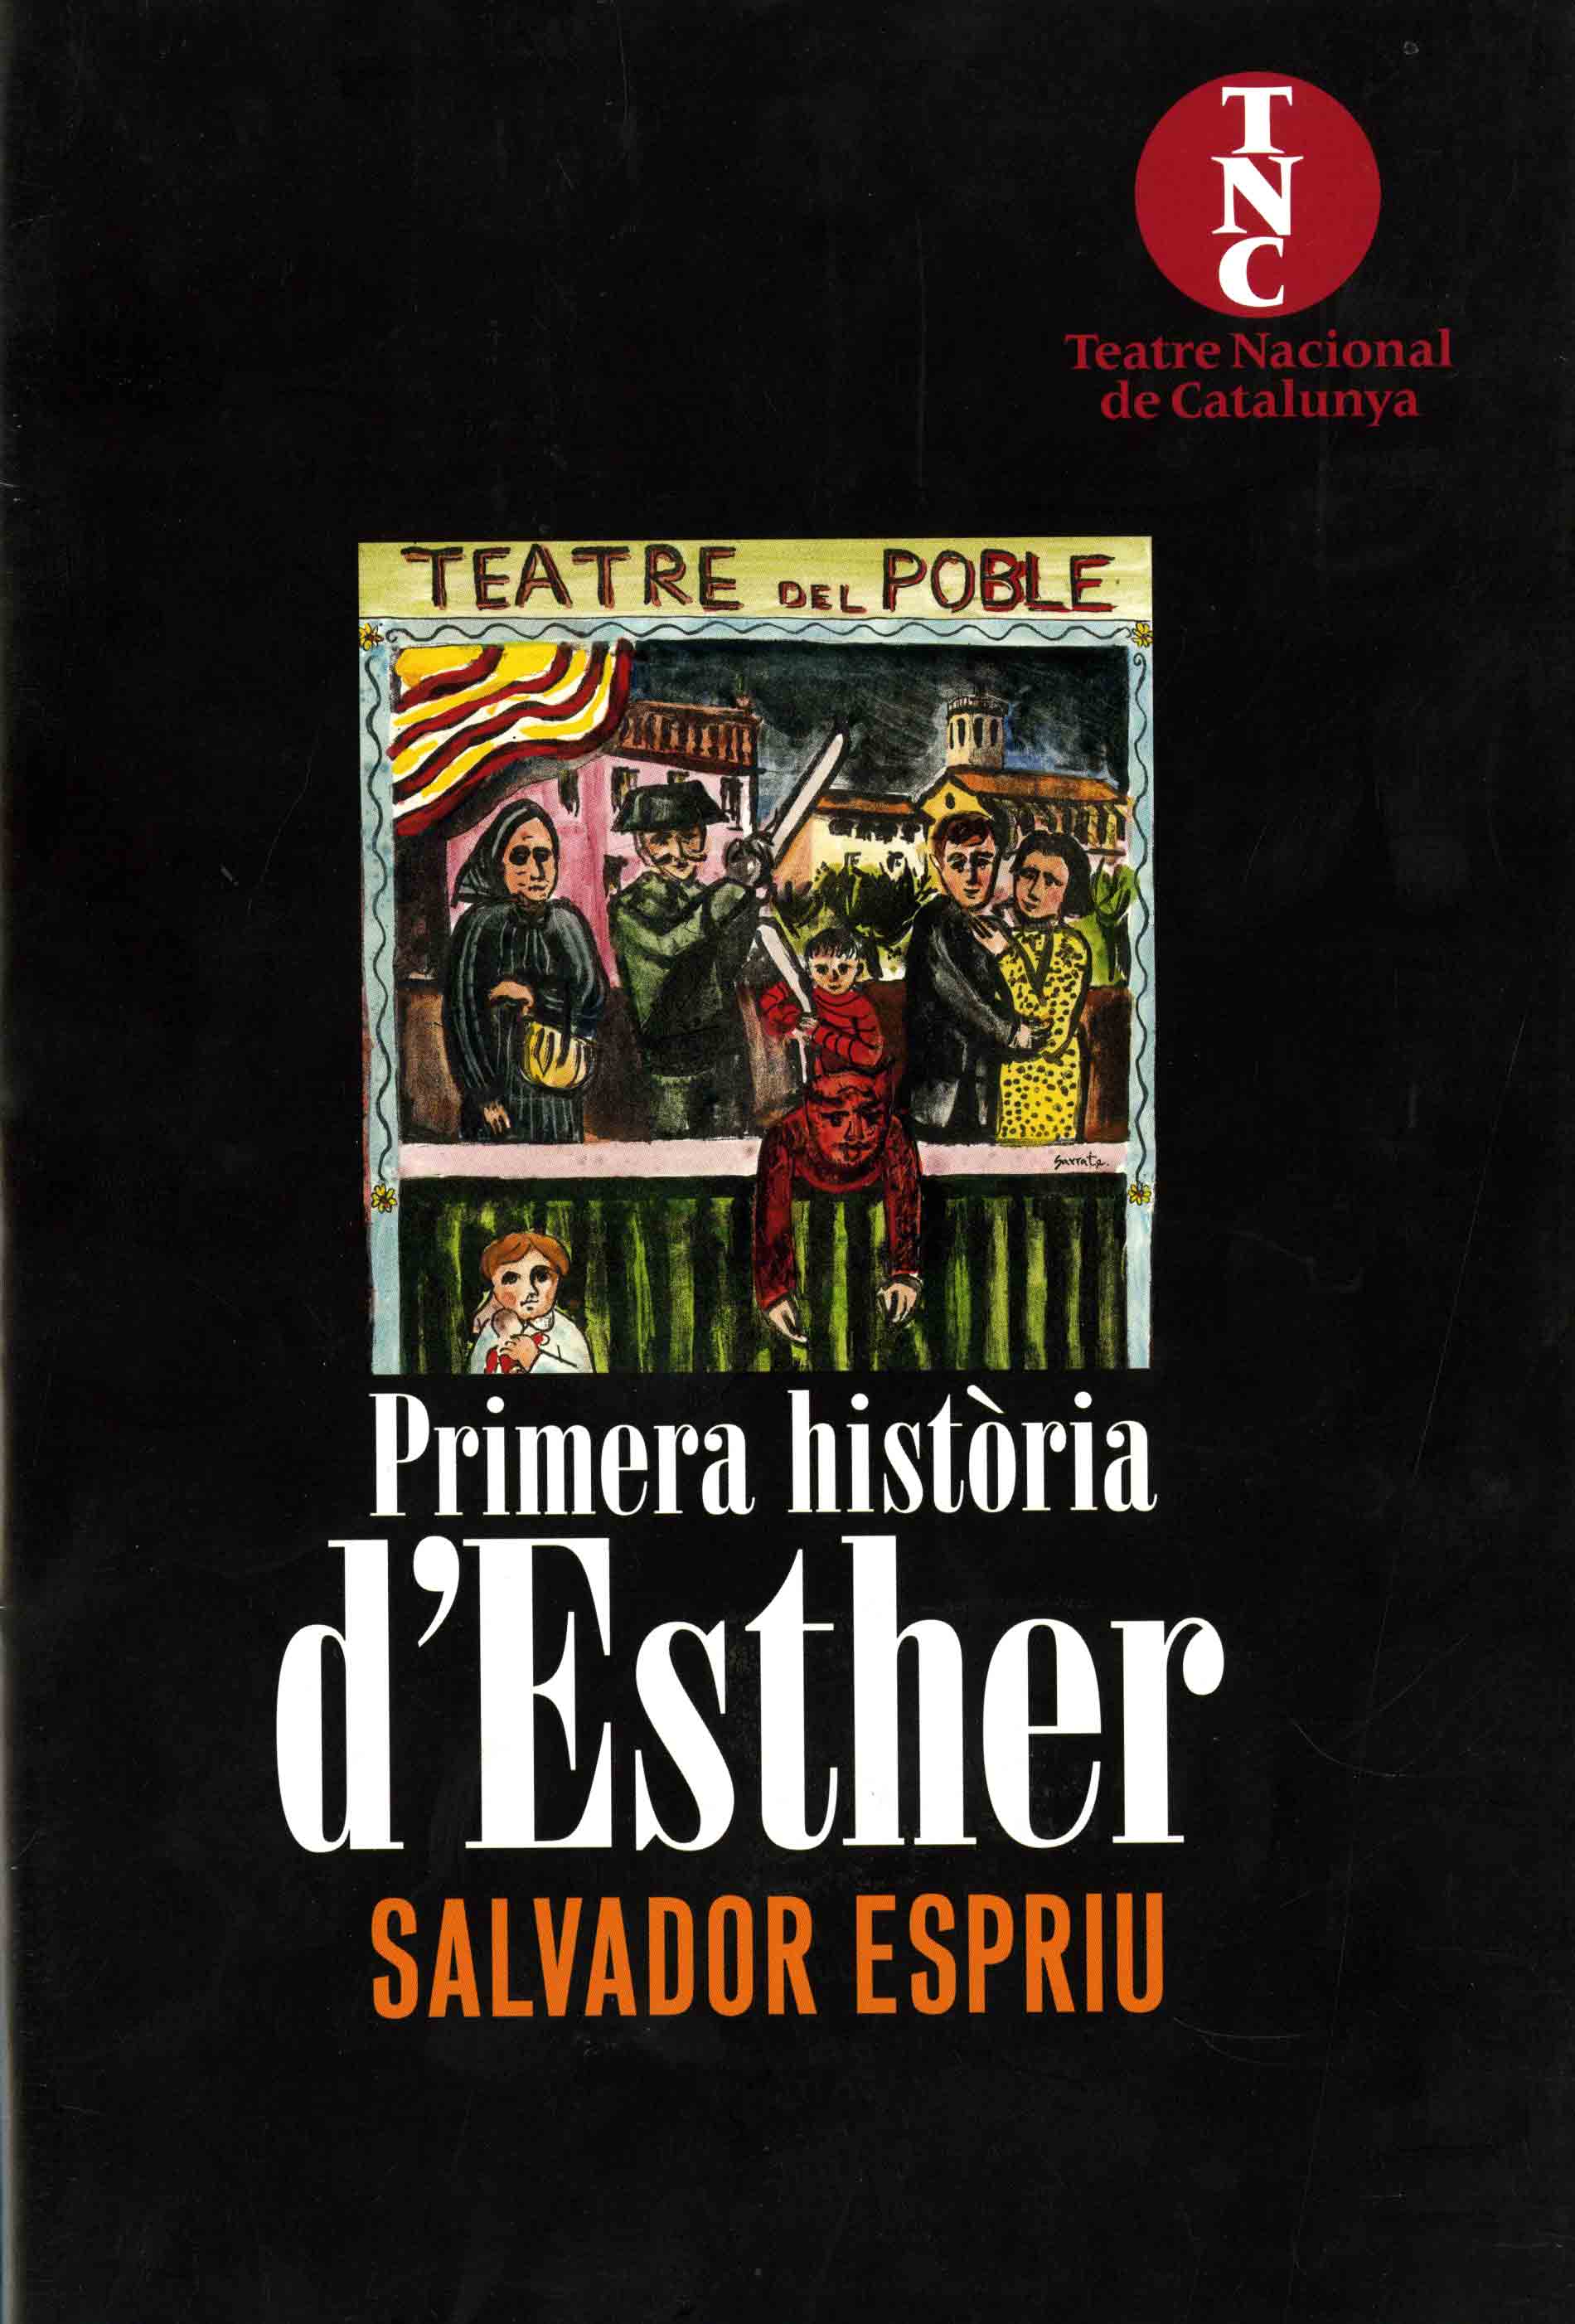 Programa. Primera història d'Esther. Teatre Nacional de Catalunya. 2007